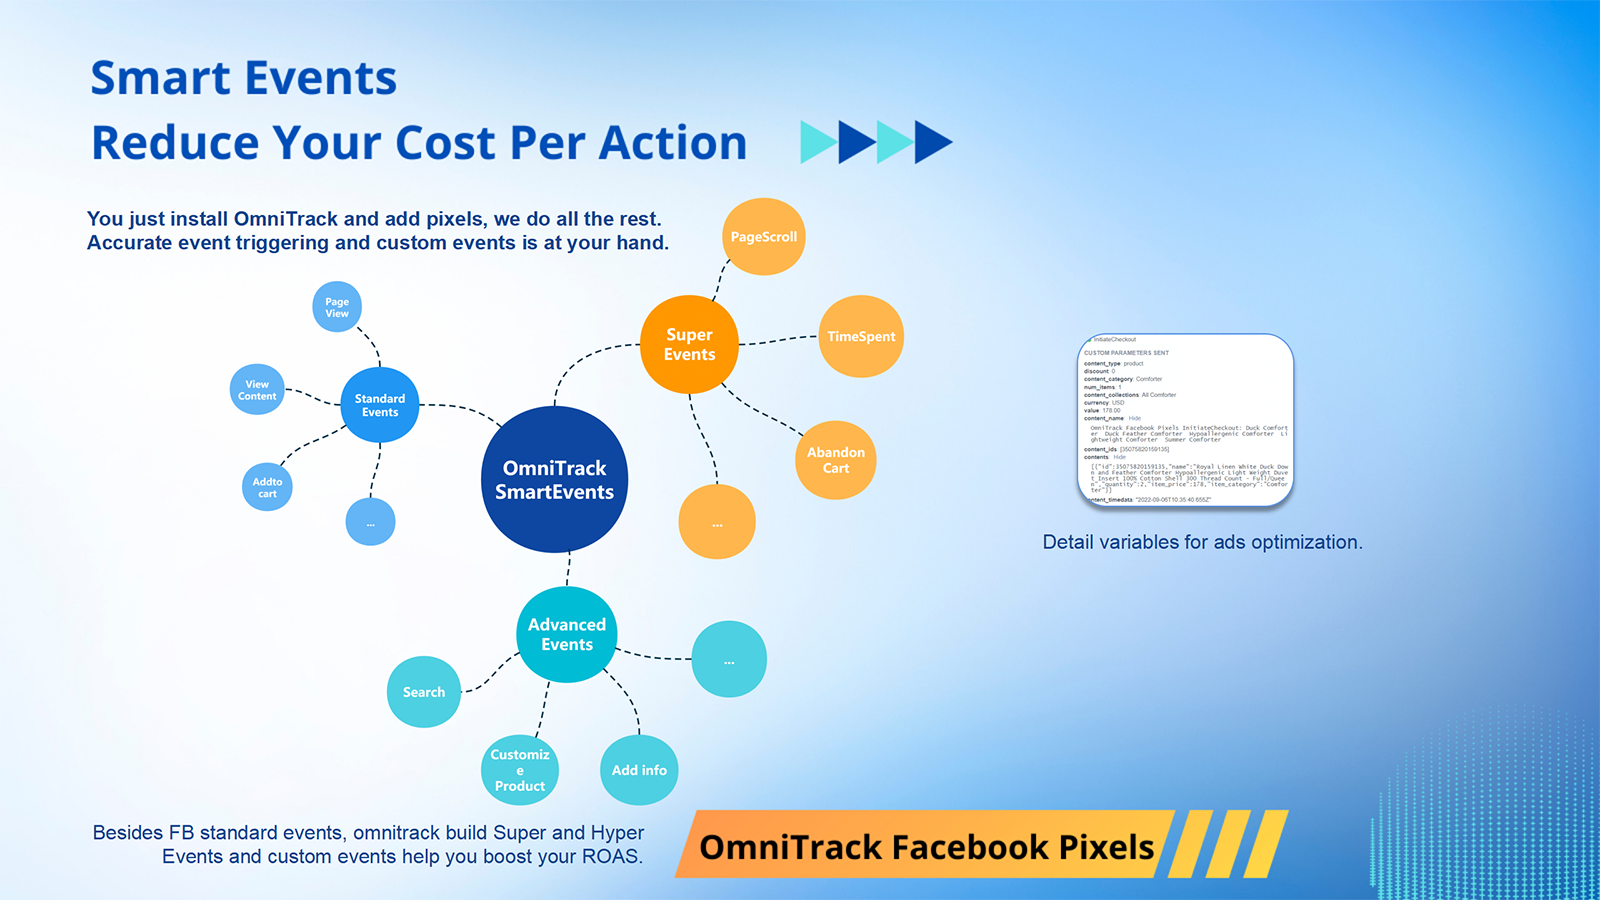 Omnitrack - Intelligente Ereignisauslösung reduziert CPA für Facebook-Anzeigen